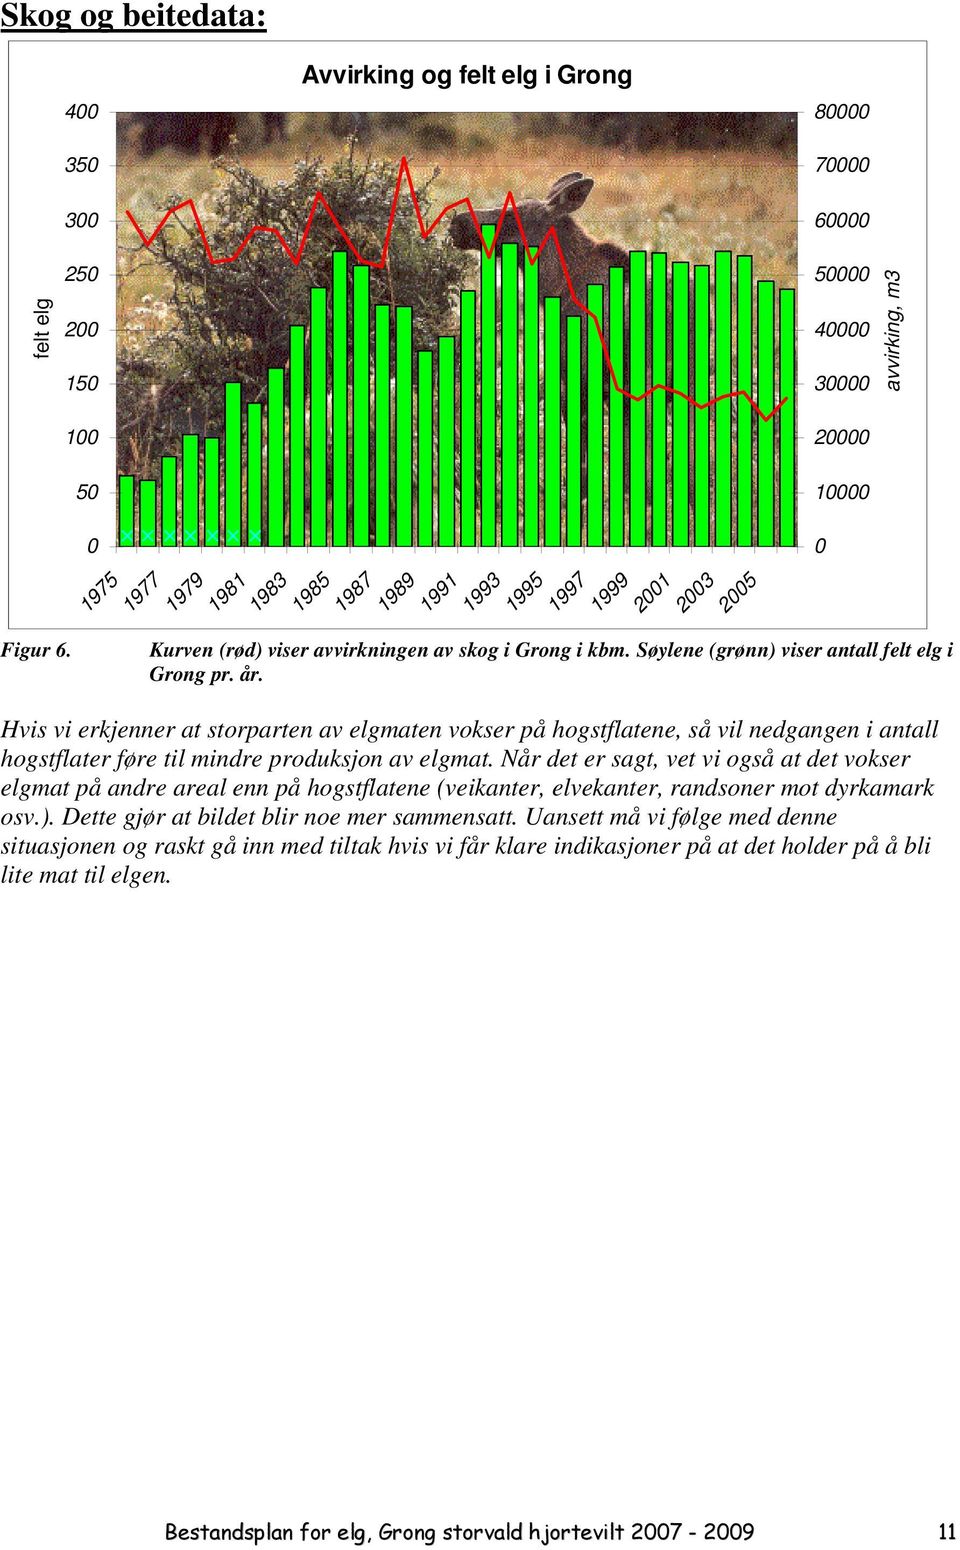 Søylene (grønn) viser antall felt elg i Grong pr. år. Hvis vi erkjenner at storparten av elgmaten vokser på hogstflatene, så vil nedgangen i antall hogstflater føre til mindre produksjon av elgmat.